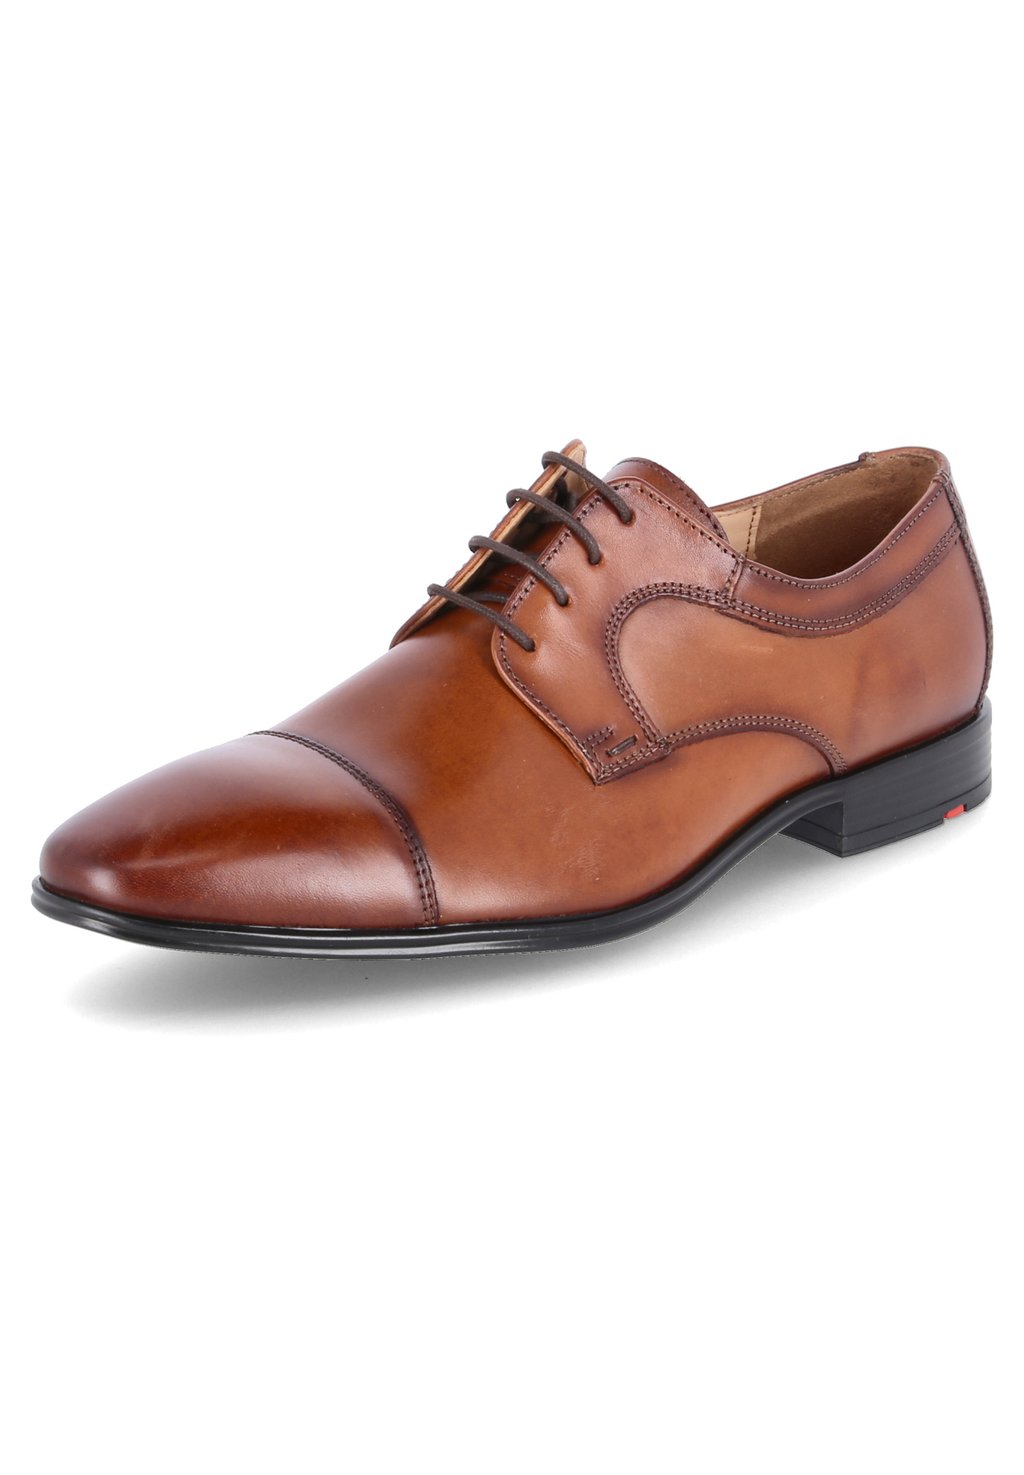 Деловые туфли на шнуровке LEO Lloyd, цвет braun деловые туфли на шнуровке mare lloyd цвет braun